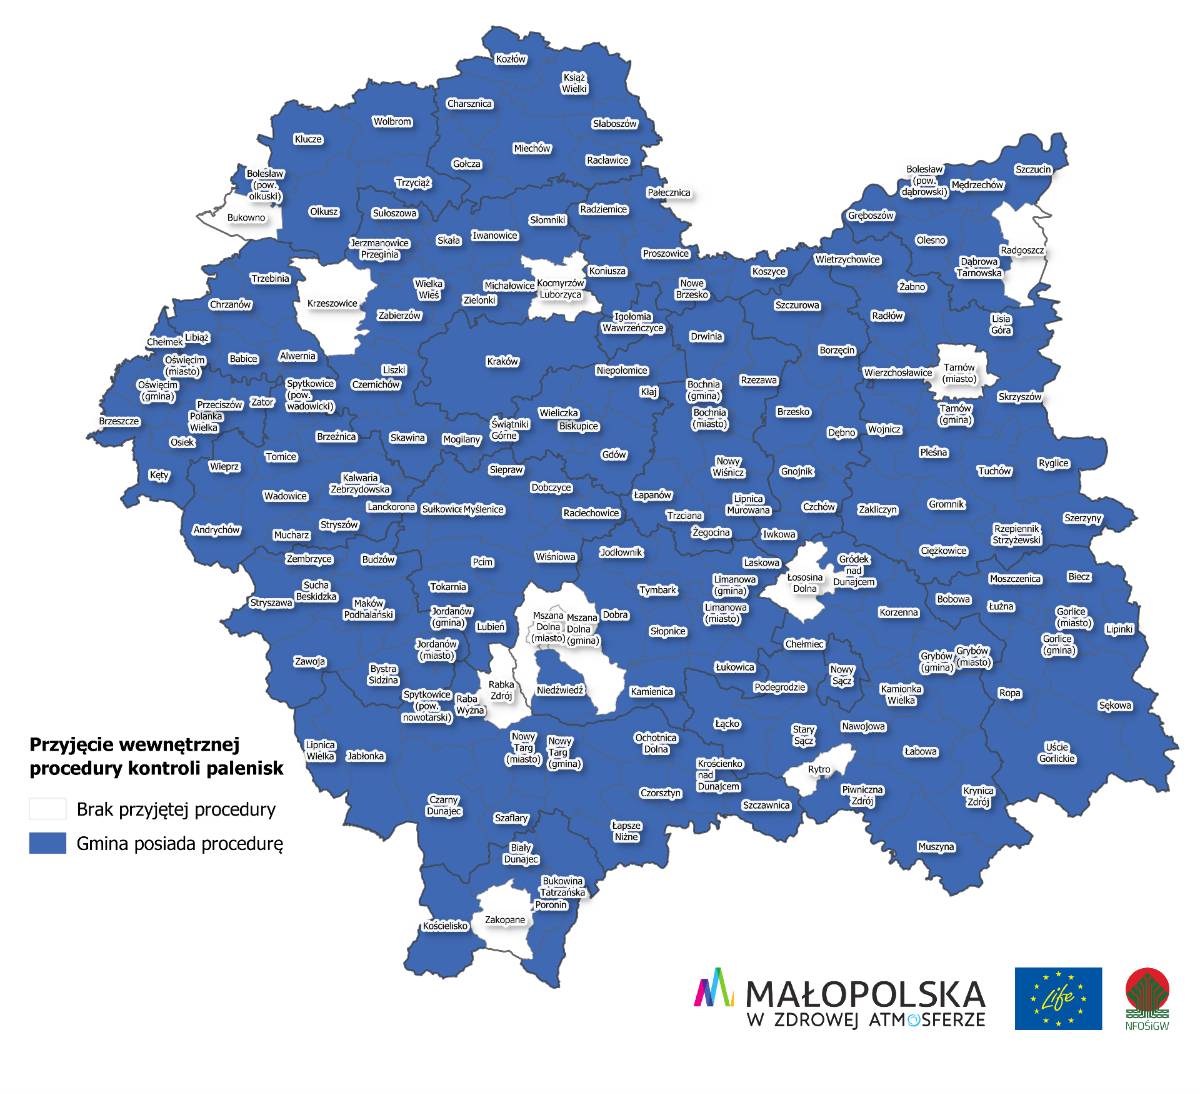 Mapka przedstawiająca gminy w Małopolsce, które przyjęły wewnętrzną procedurę kontroli palenisk